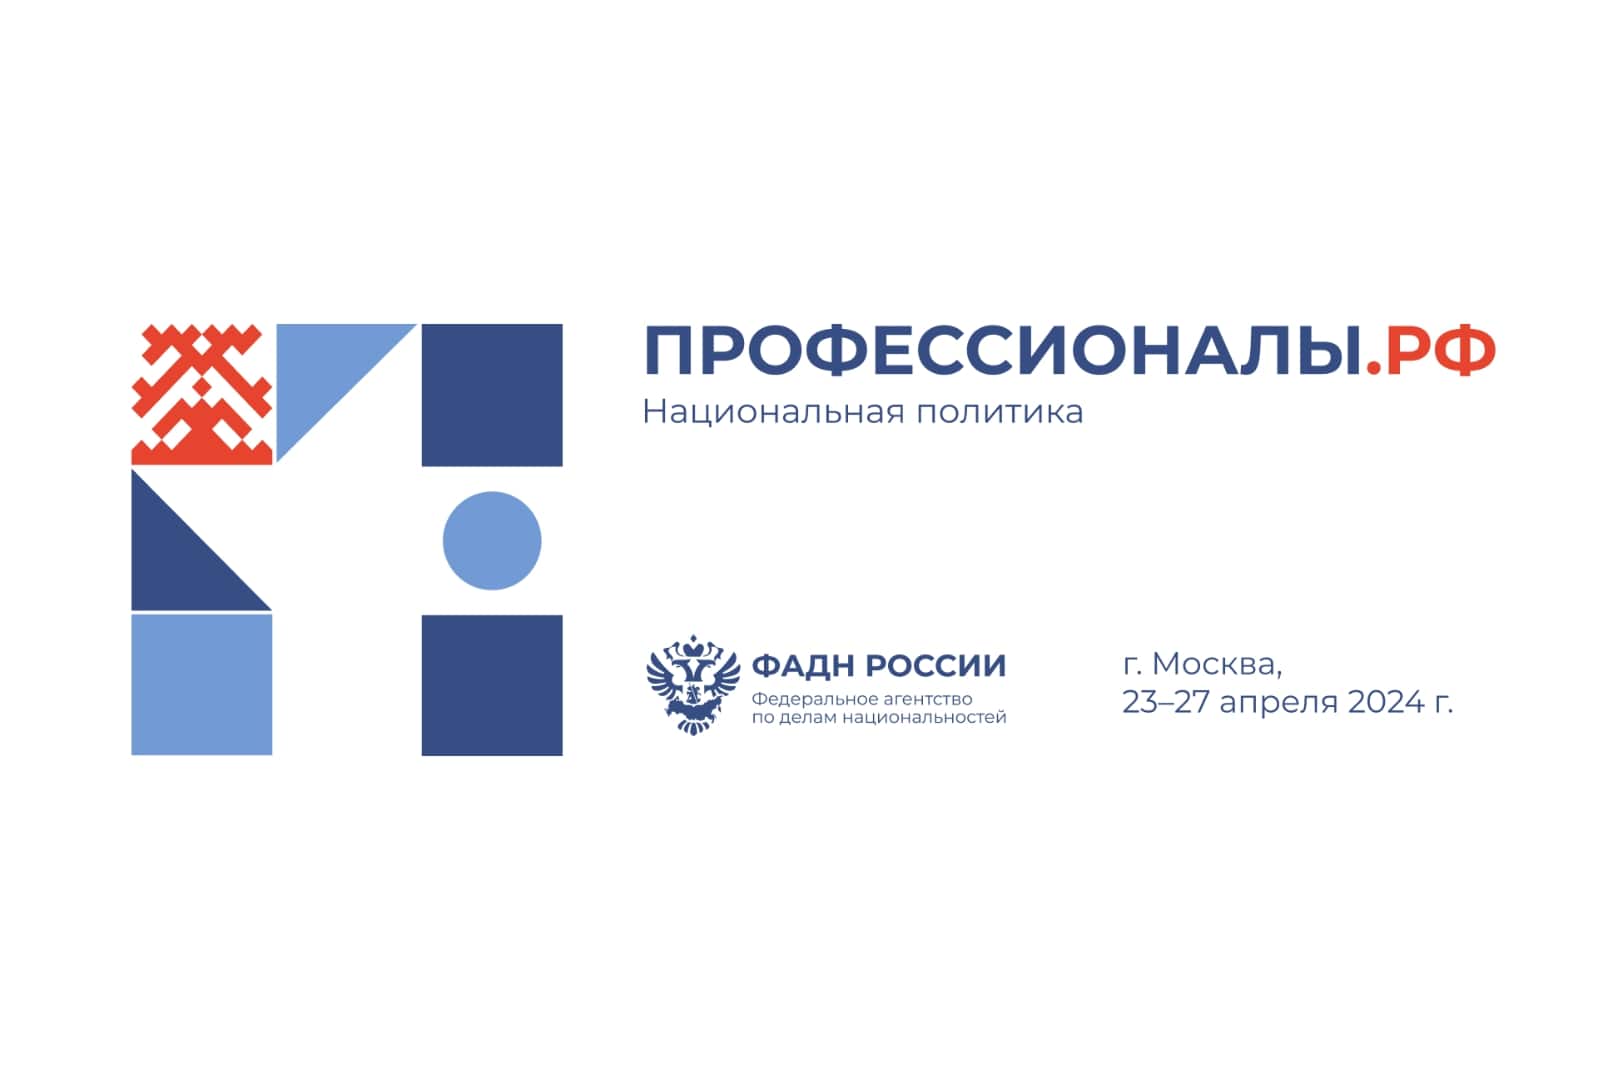 В Москве пройдет Всероссийский форум в сфере реализации государственной национальной политики «Профессионалы.РФ»